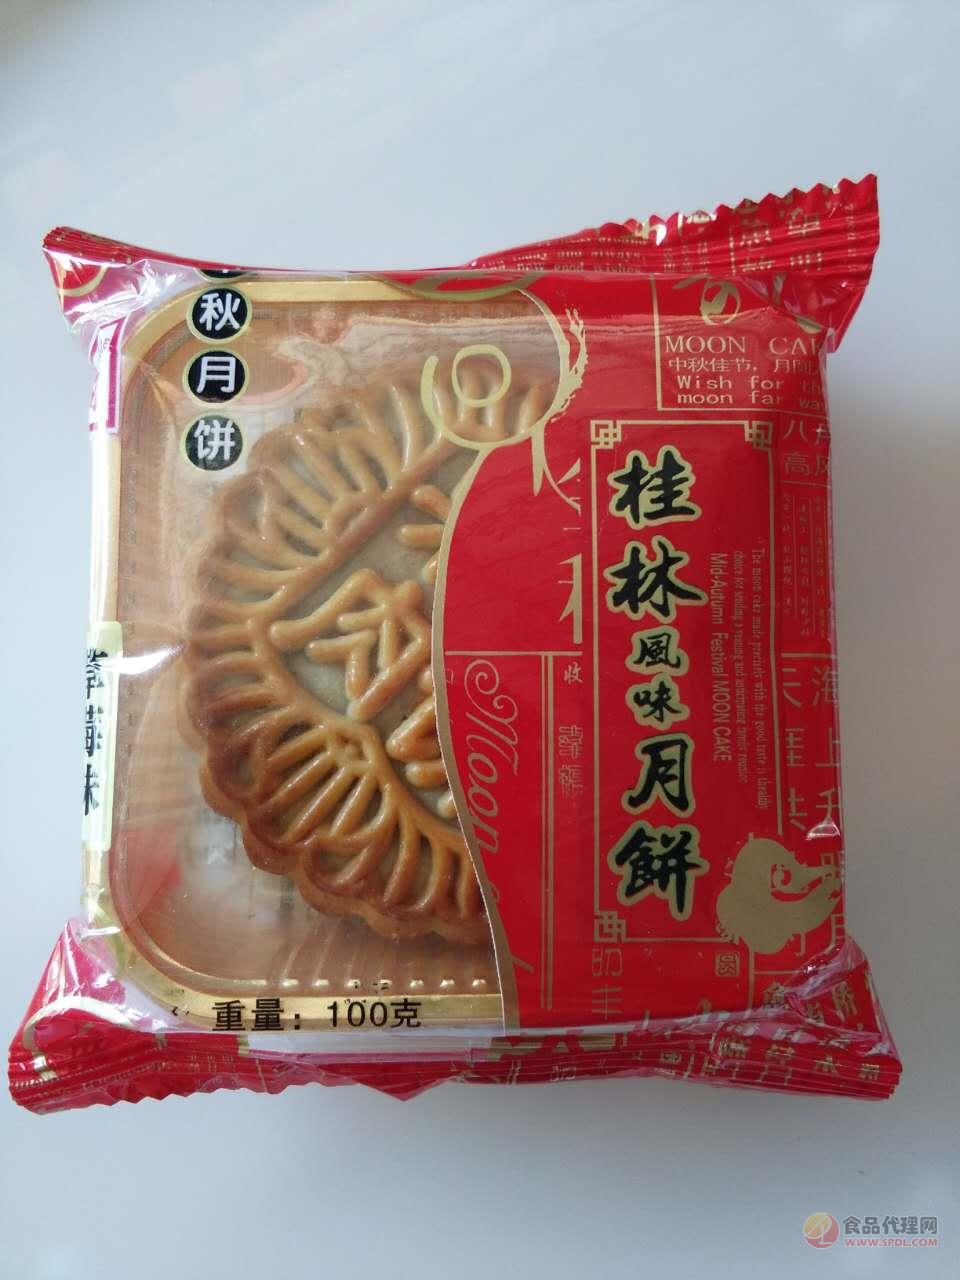 雪泊尔桂林风味月饼草莓味100g